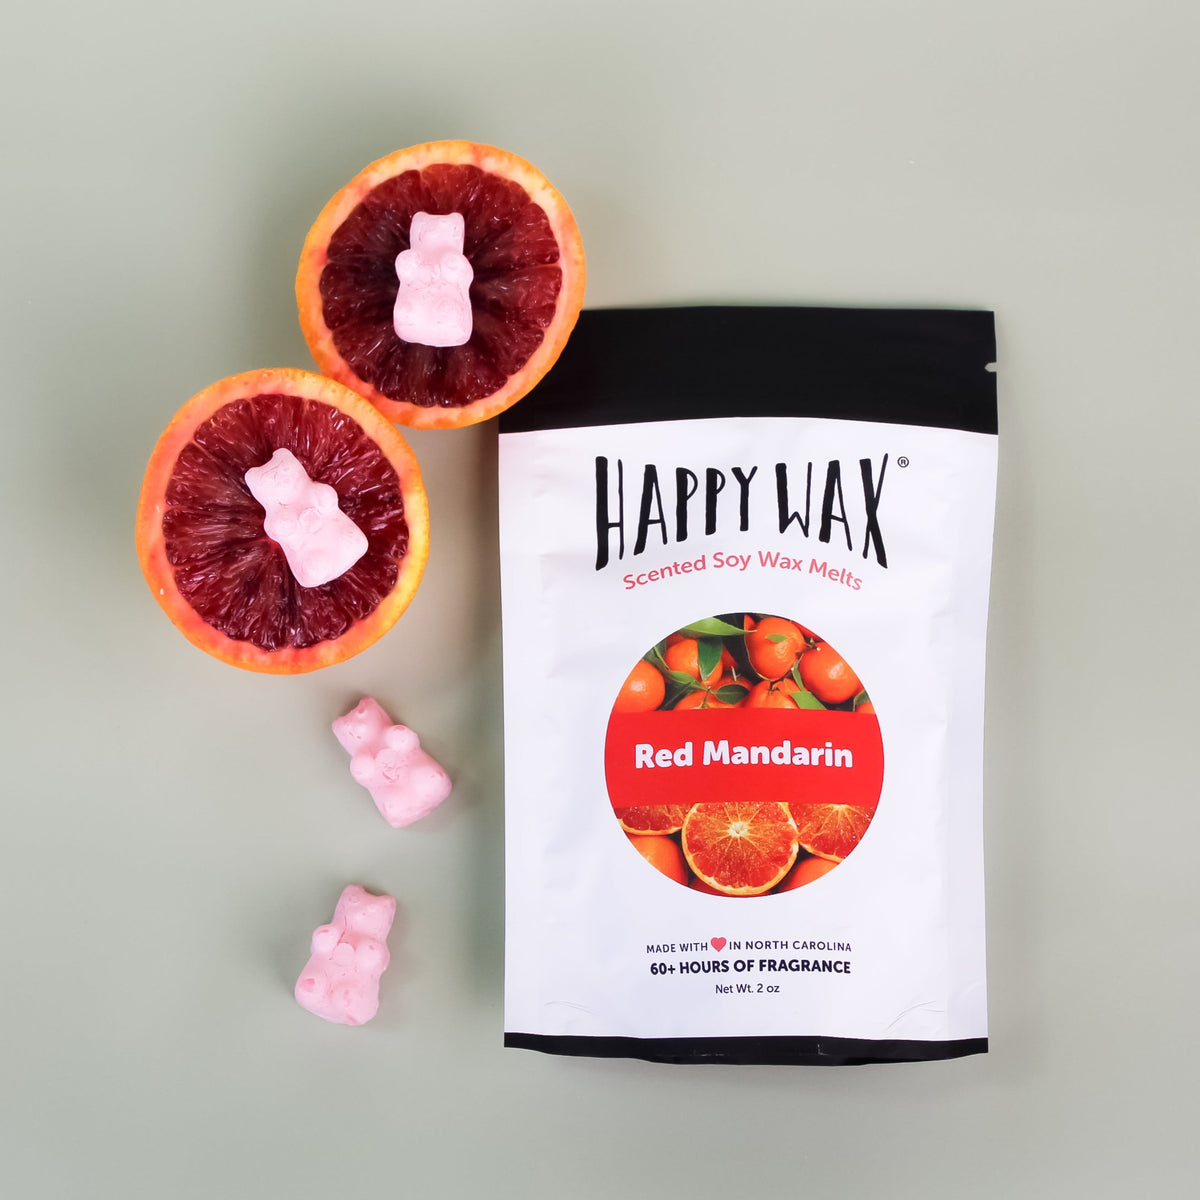 Red Mandarin Wax Melts